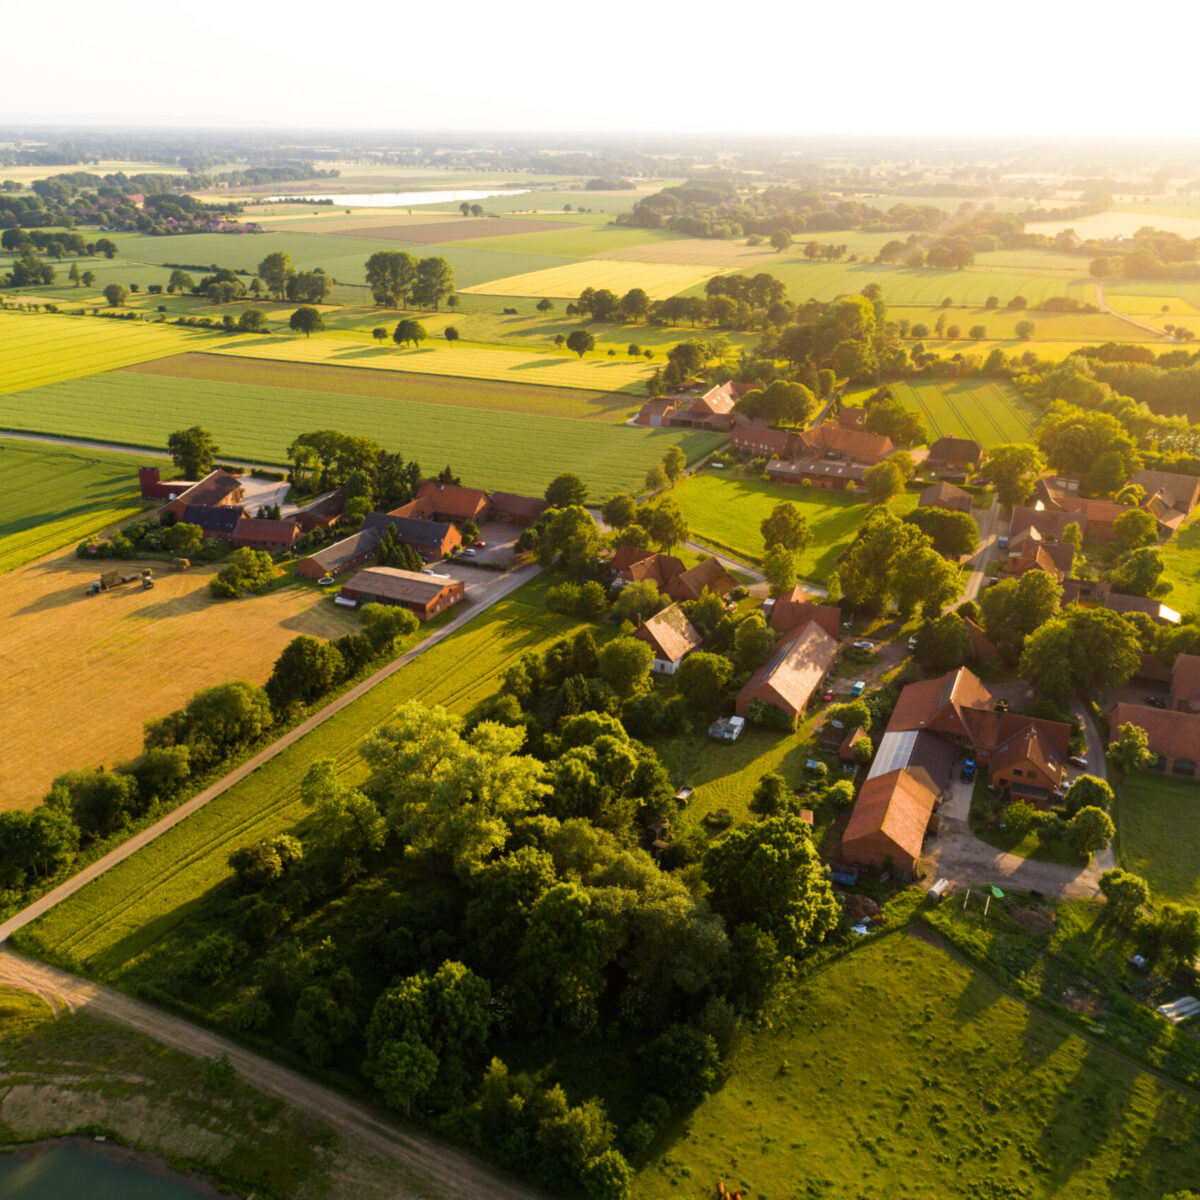 Ortschaft in Deutschland aus der Luft: Landwirtschaftliche Betriebe und Flächen sind zu erkennen.